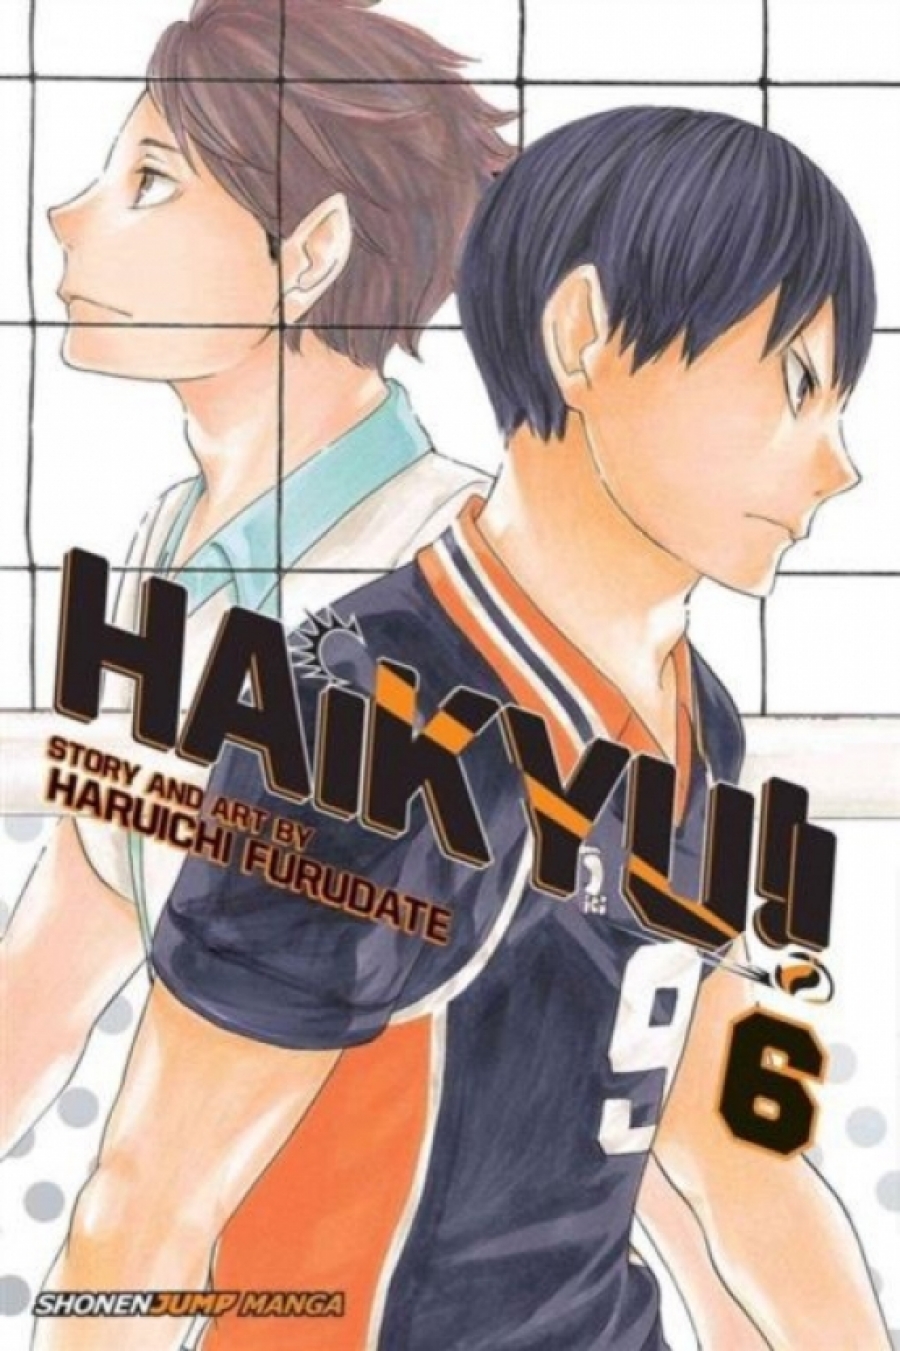 Furudate, Haruichi Haikyu!!, Vol. 6 